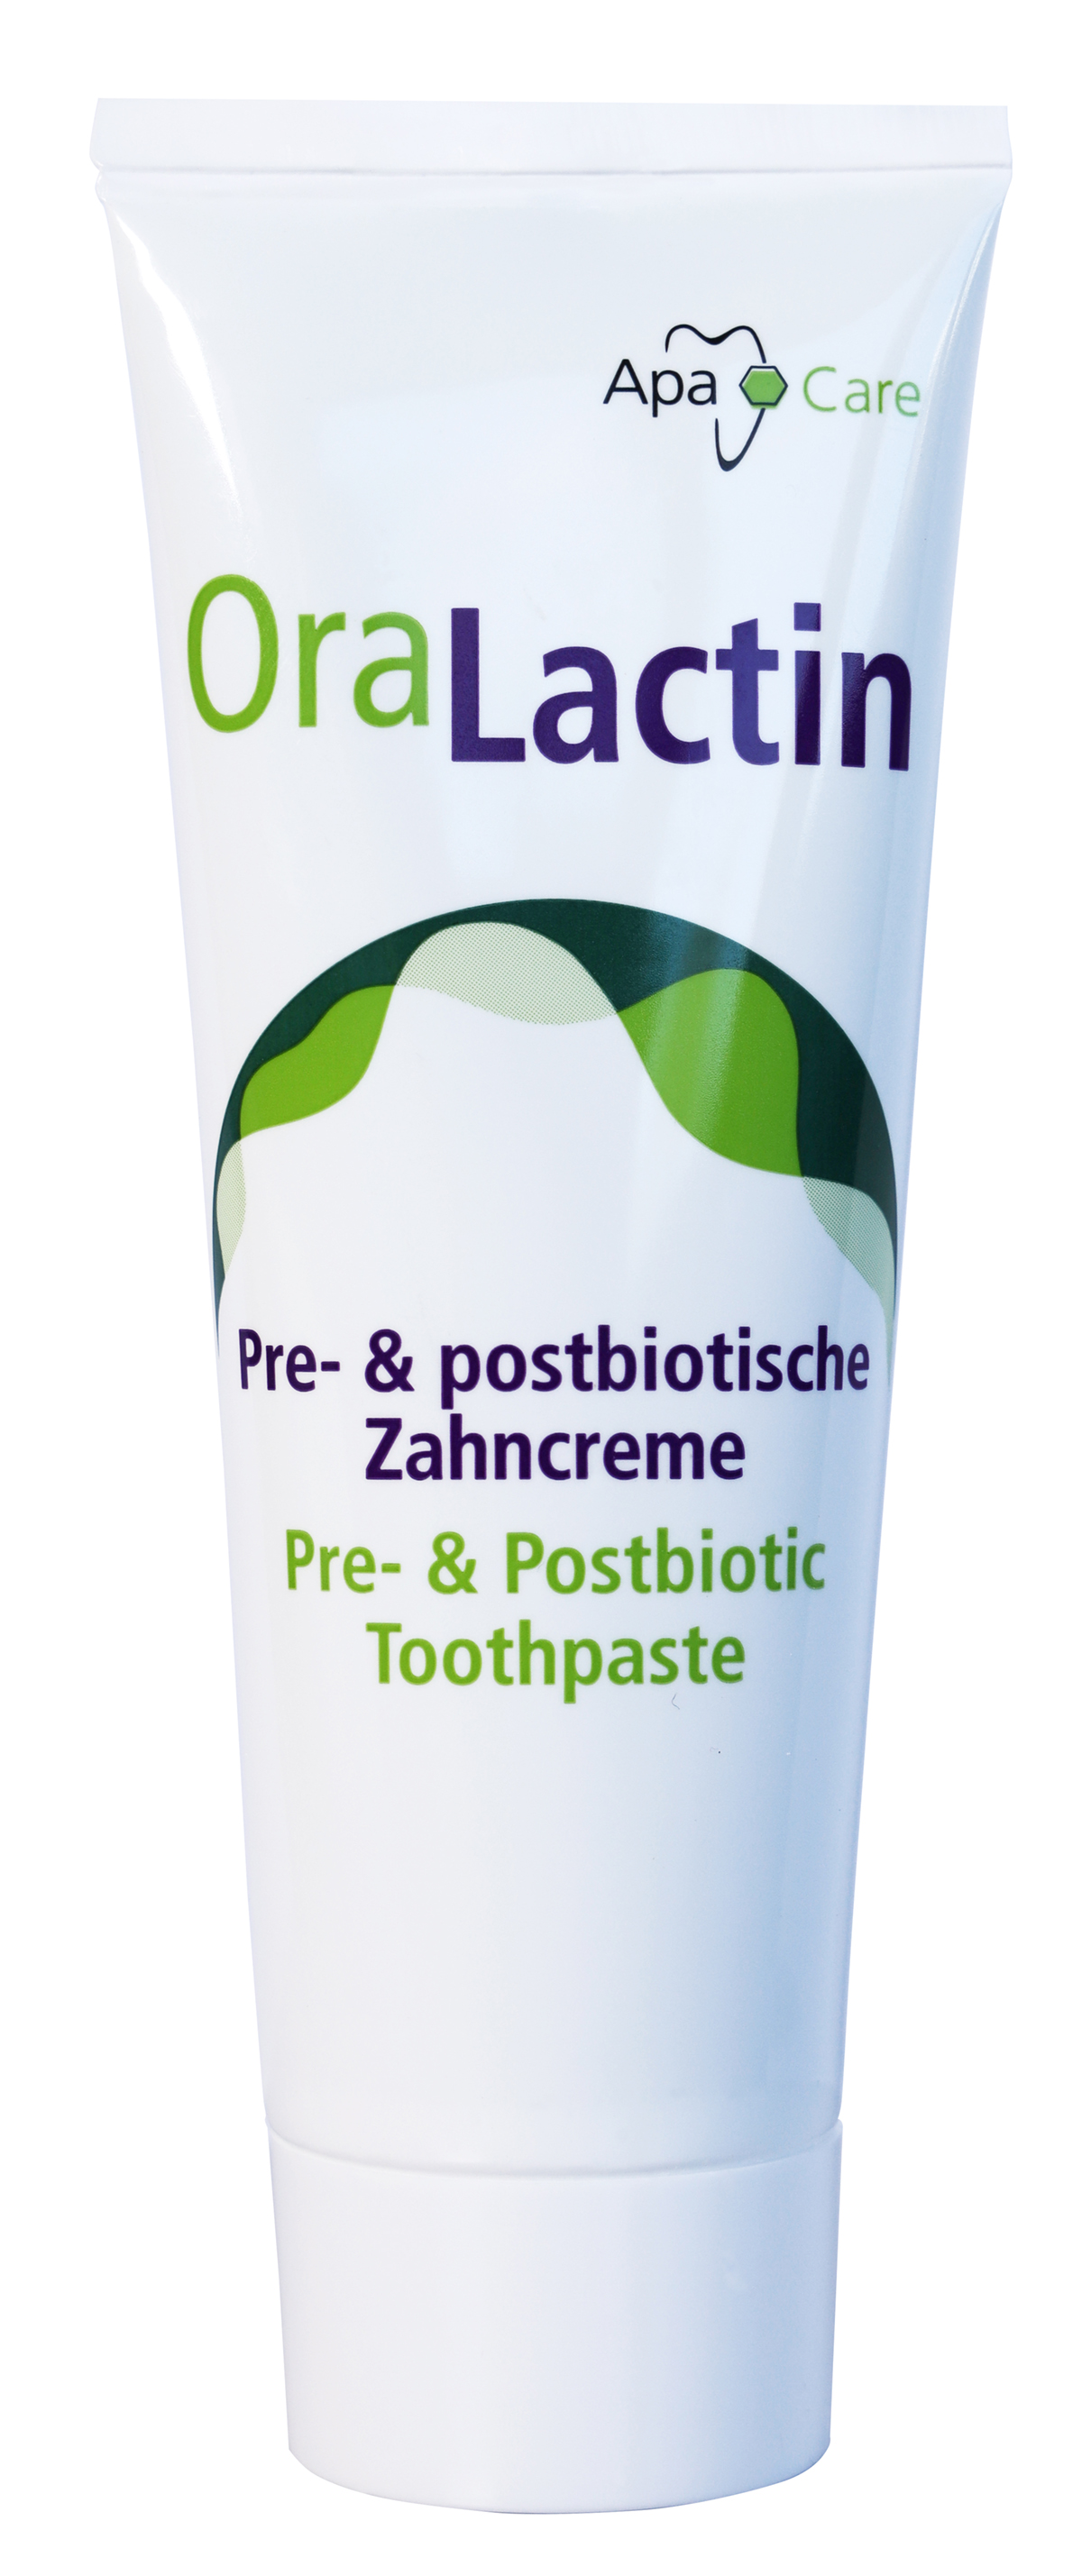 OraLactin pre- und postbiotische Zahncreme